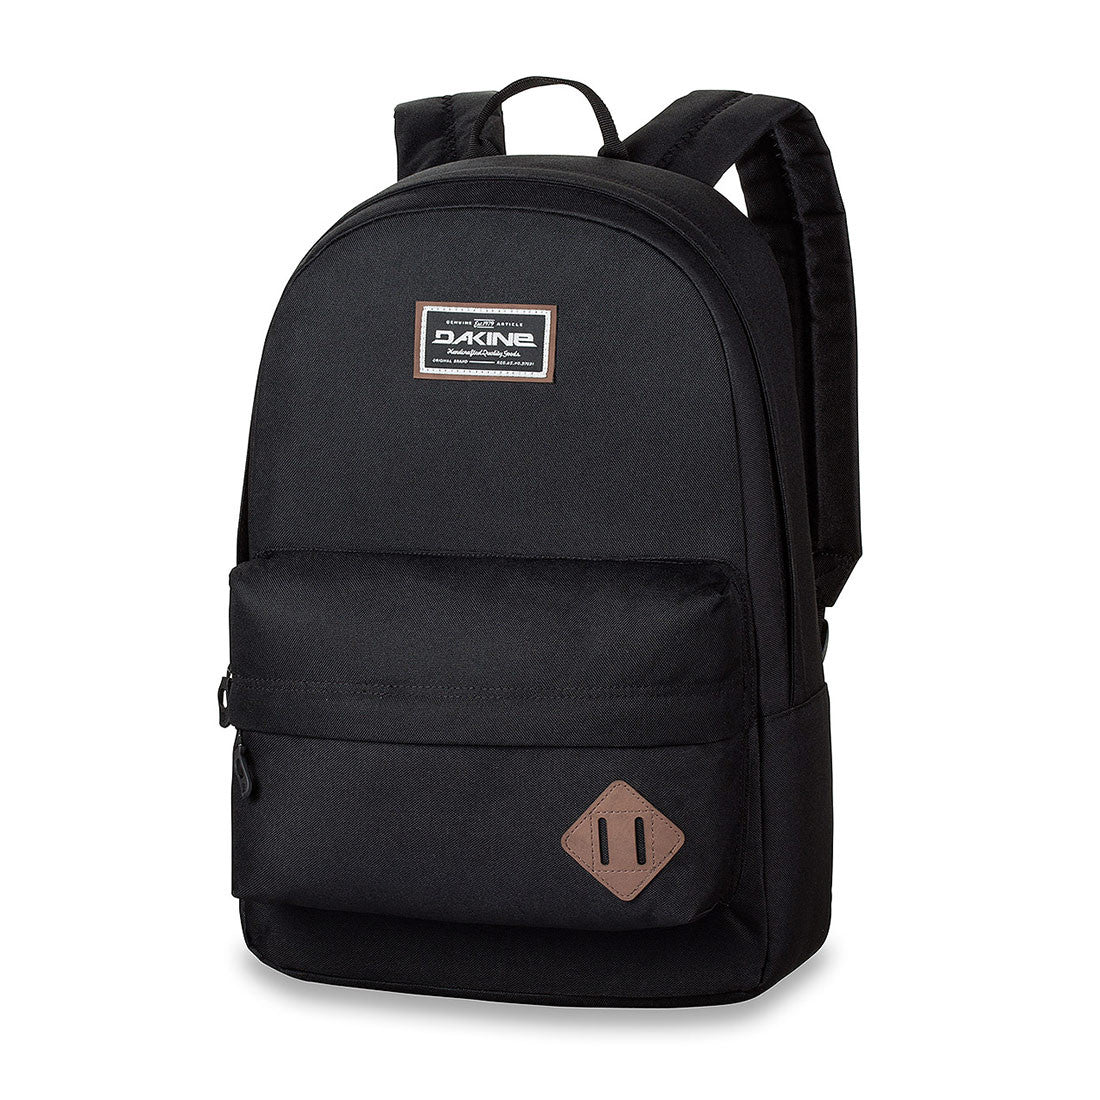 Dakine 365 Backpack (Black)